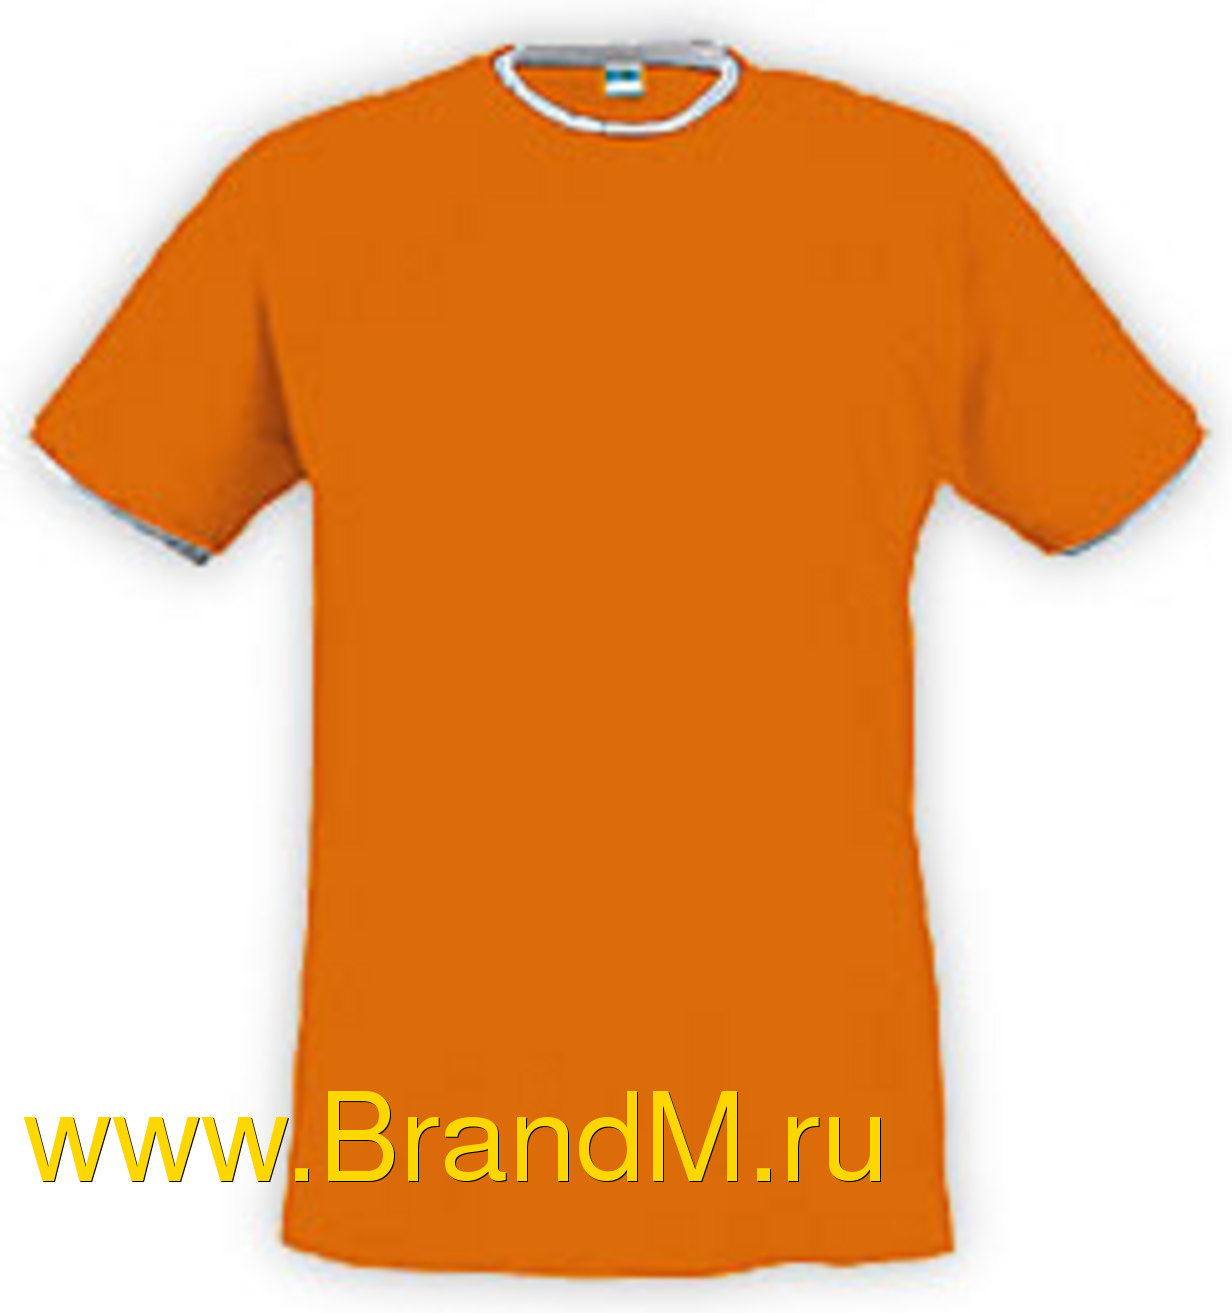 купить футболку с надписью в Иркутске